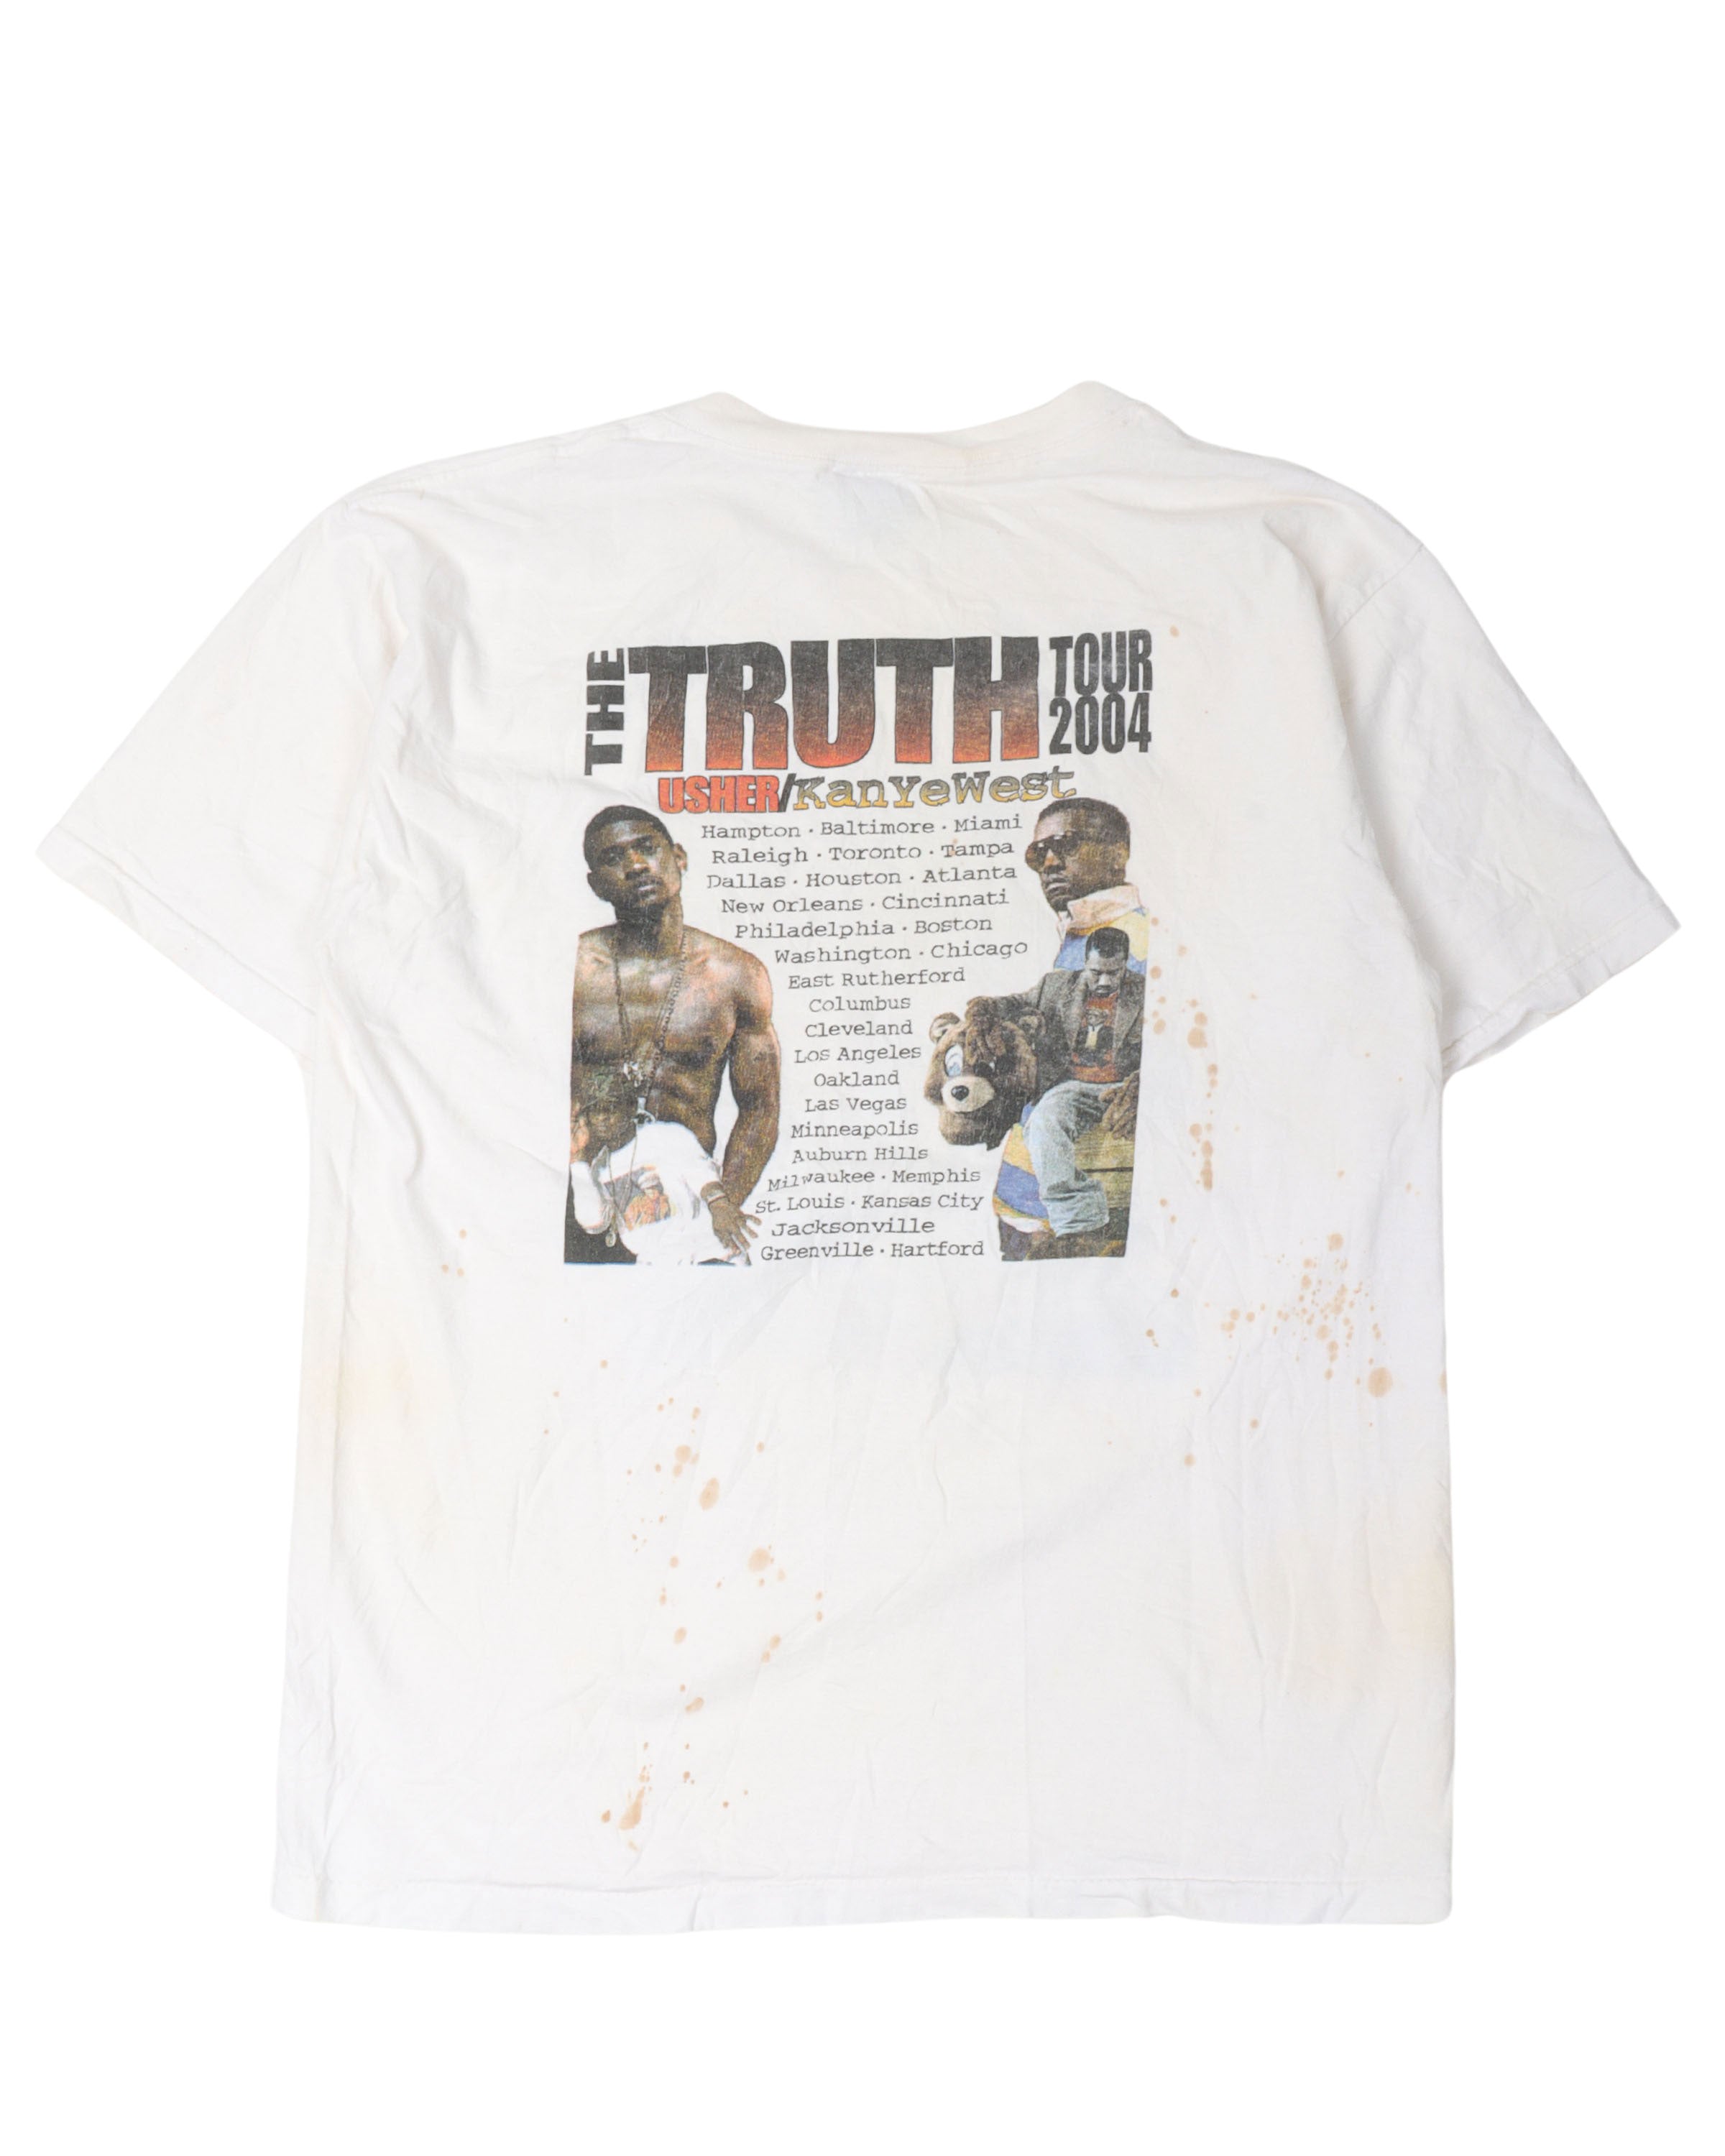 Usher & Kanye West Truth Tour 2004 T-Shirt